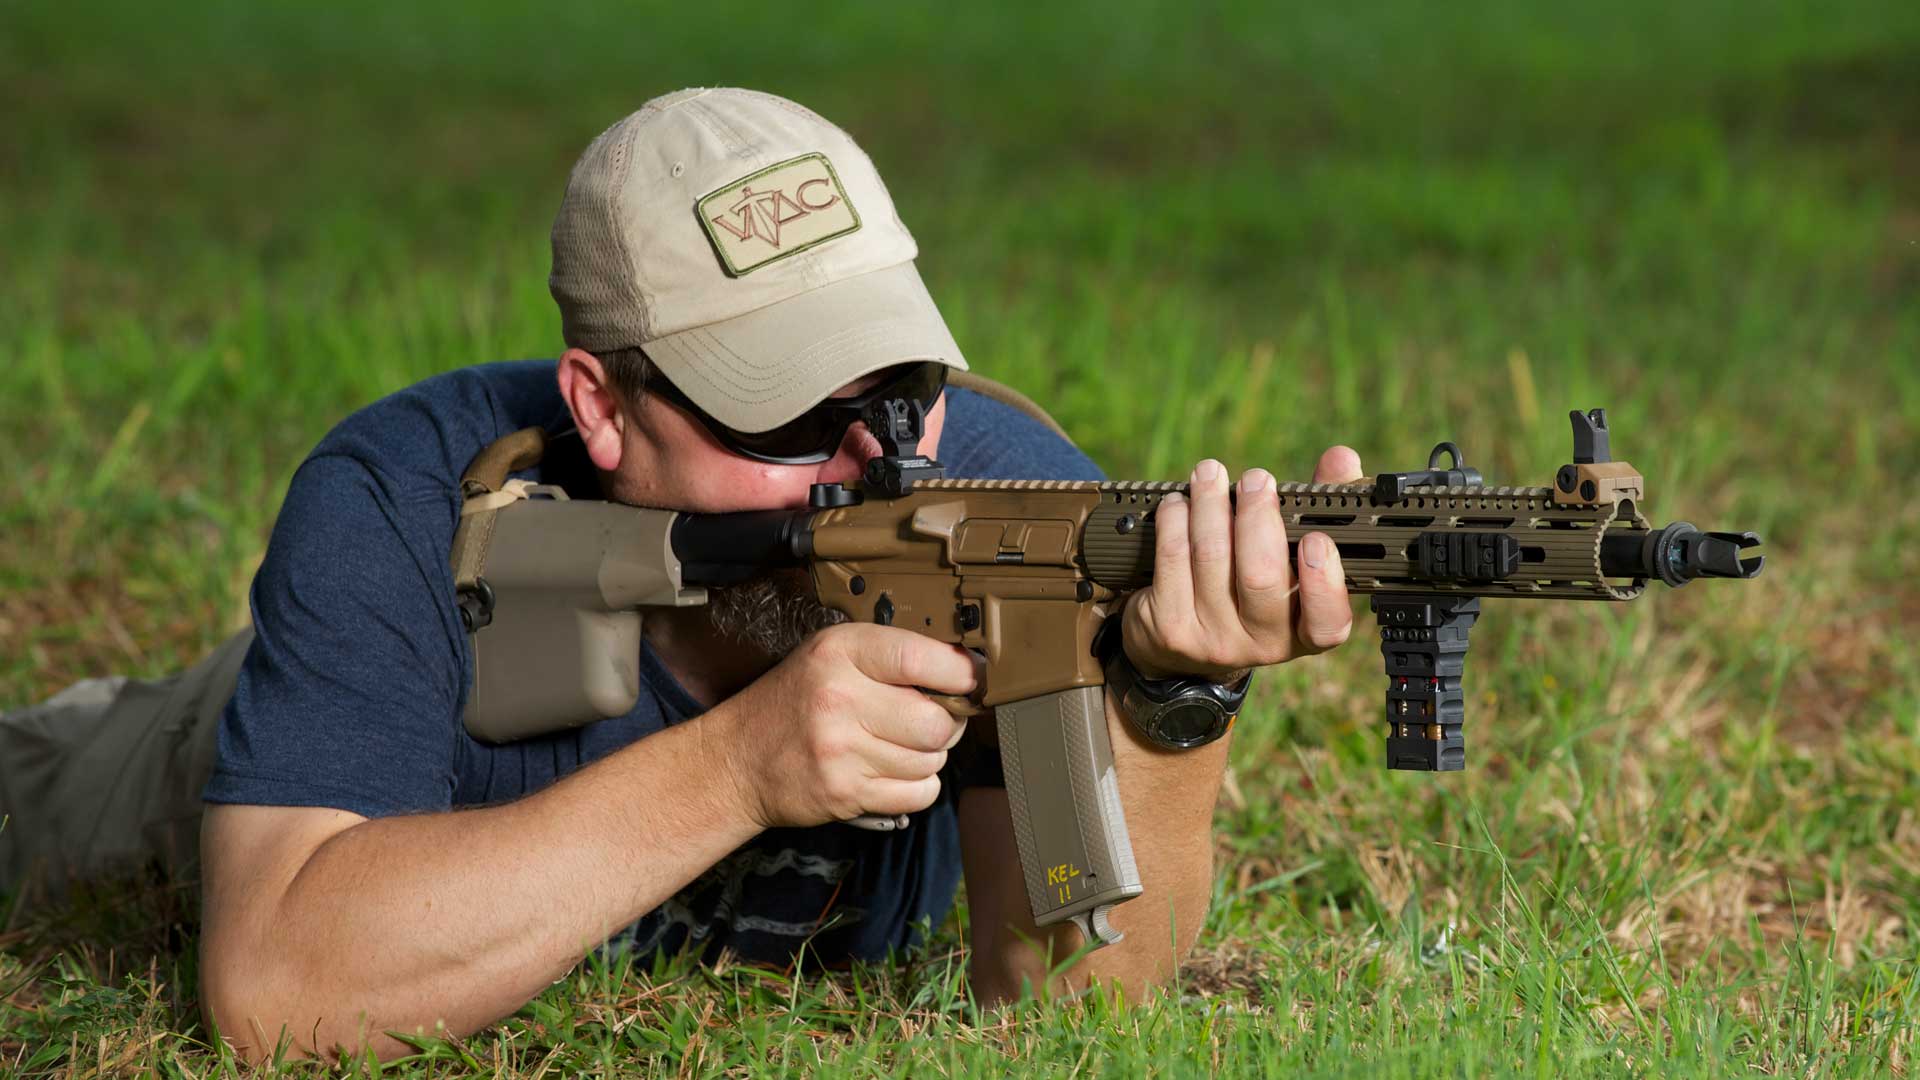 man grass rifle shooting outdoors blue shirt green gun